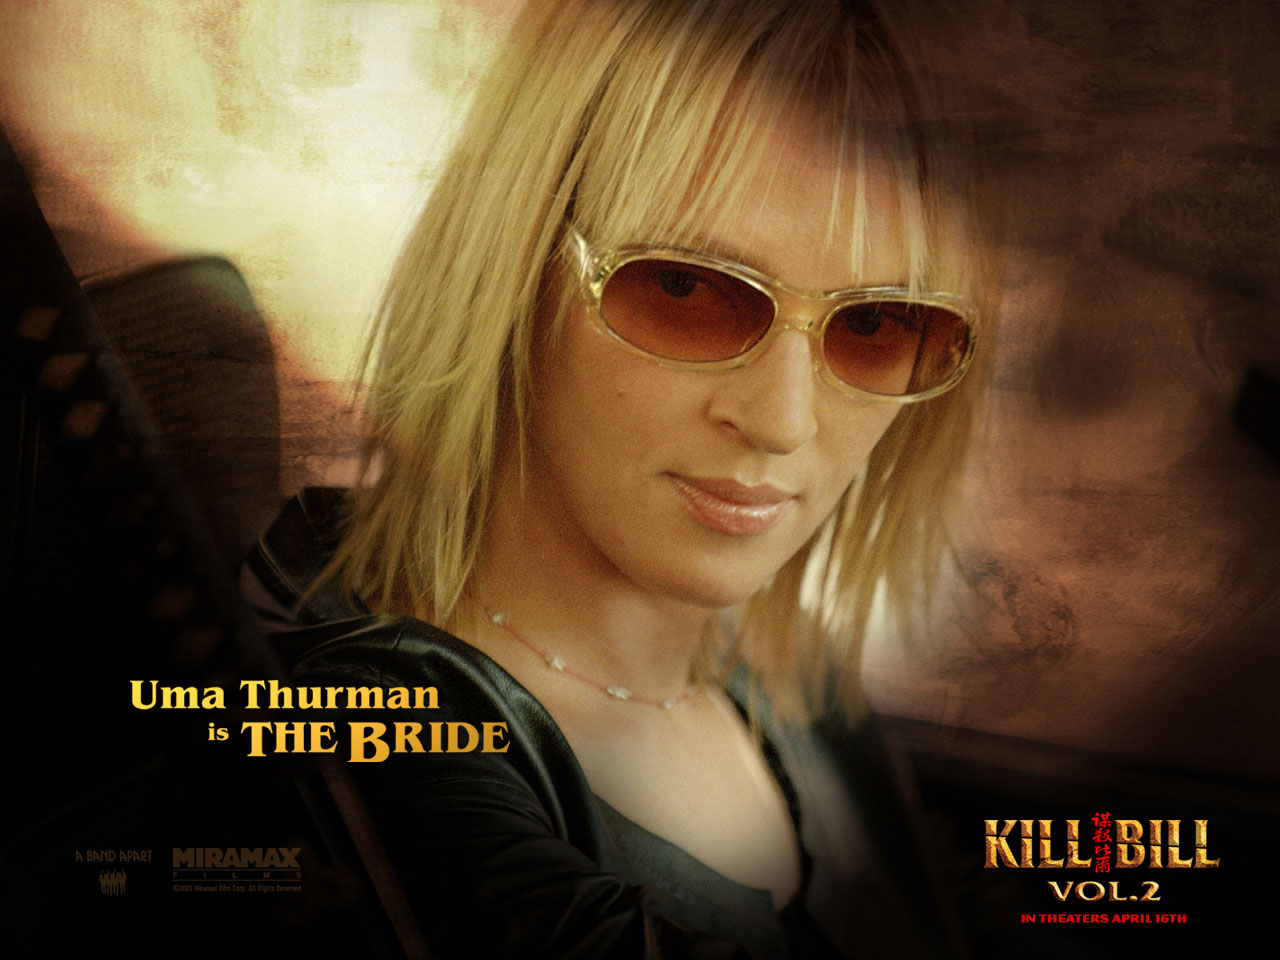 Kill Bill: Vol. 2 Wallpapers